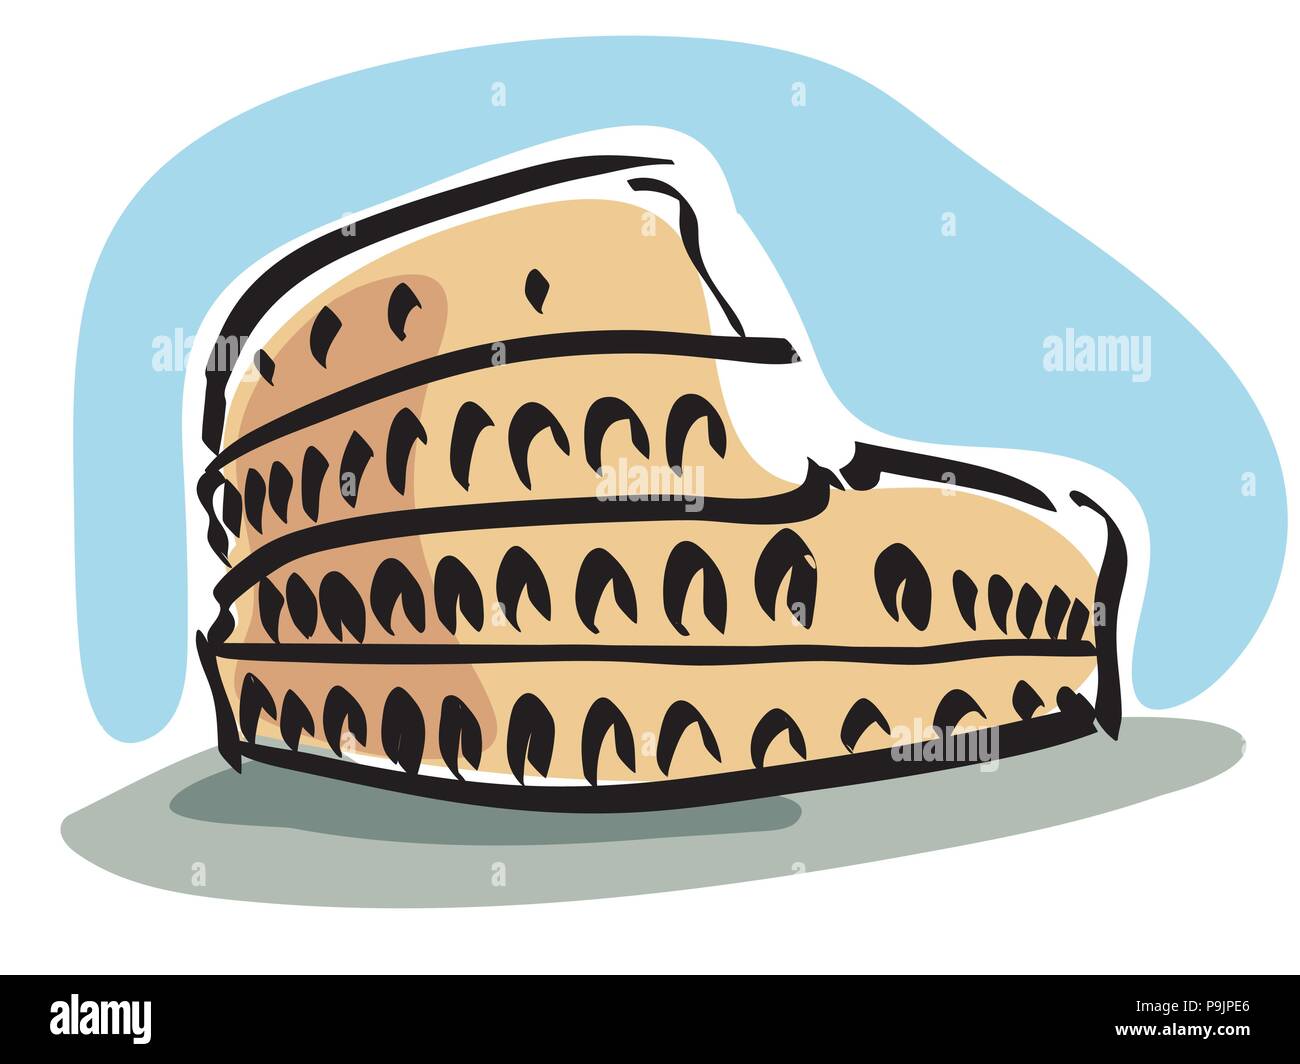 Vector illustration du Colisée à Rome, il est considéré comme l'une des plus grandes œuvres de l'architecture romaine et de l'ingénierie Romaine Illustration de Vecteur